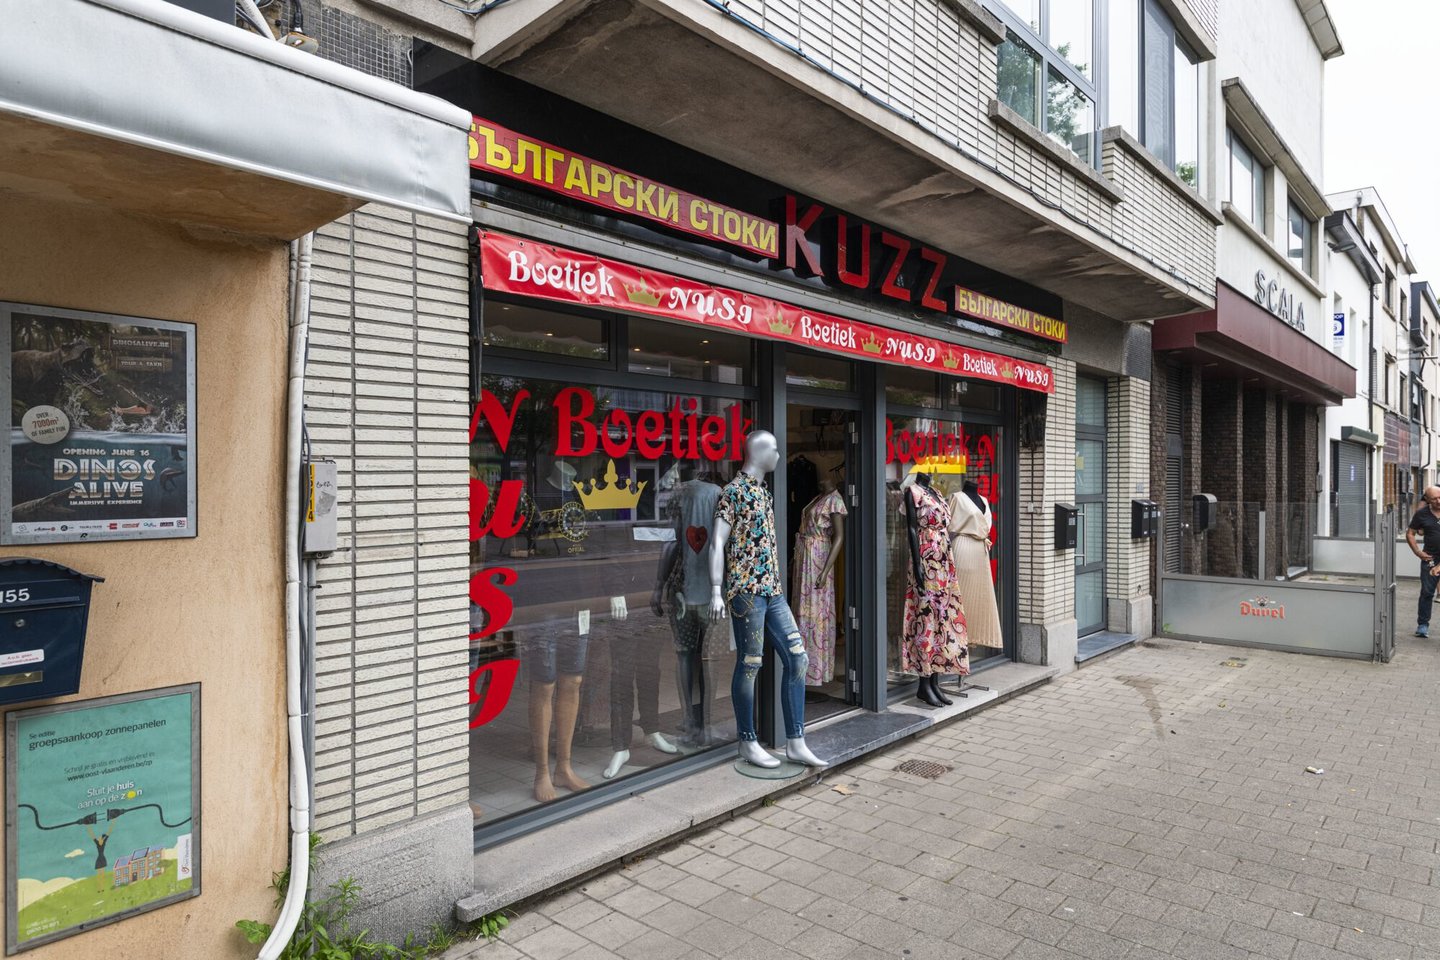 Etalage van kledingwinkel Kuzz Boetiek in Gent